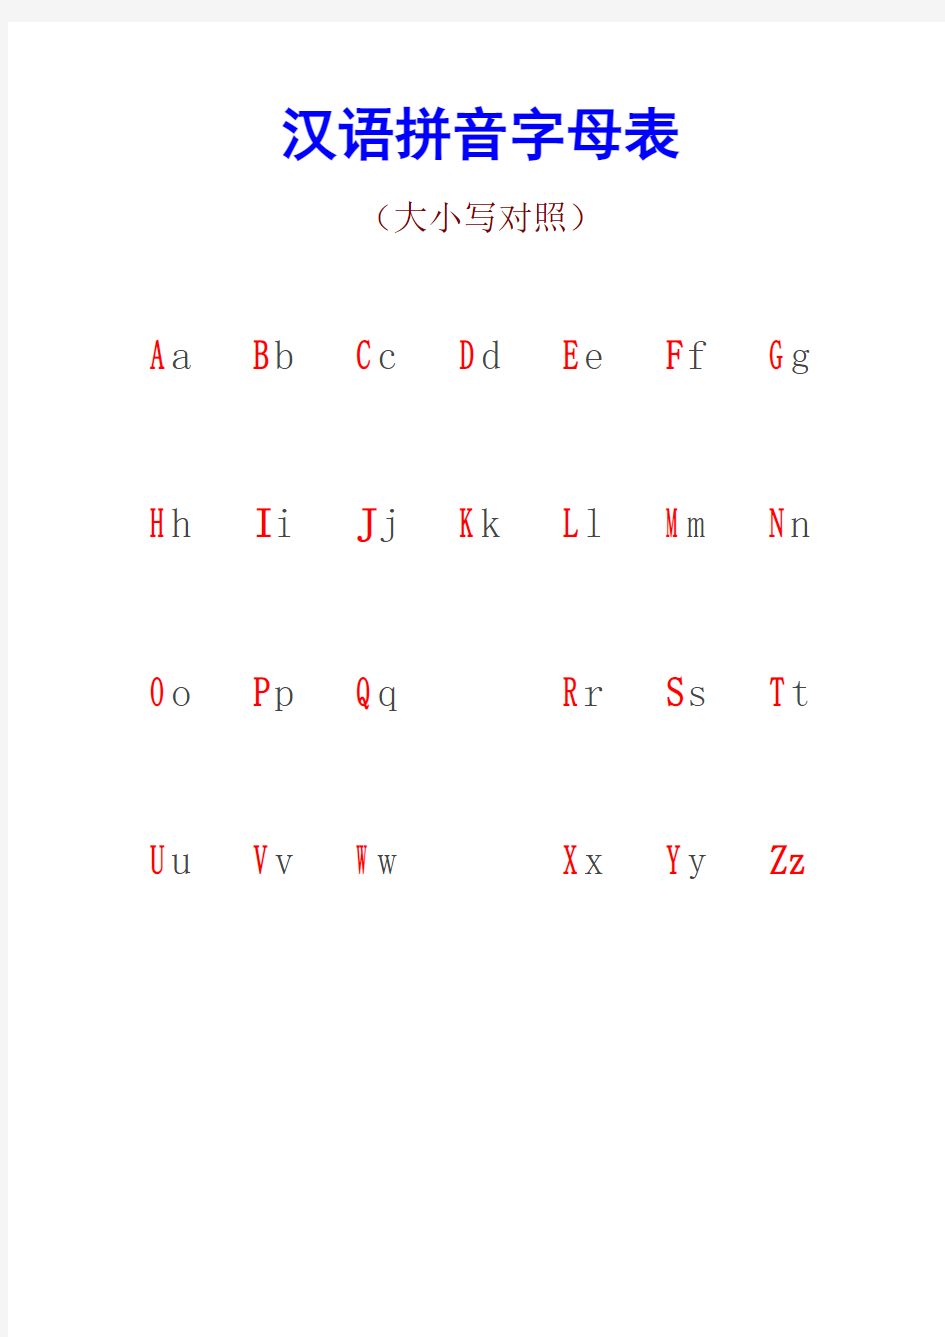 汉语拼音字母表-推荐下载